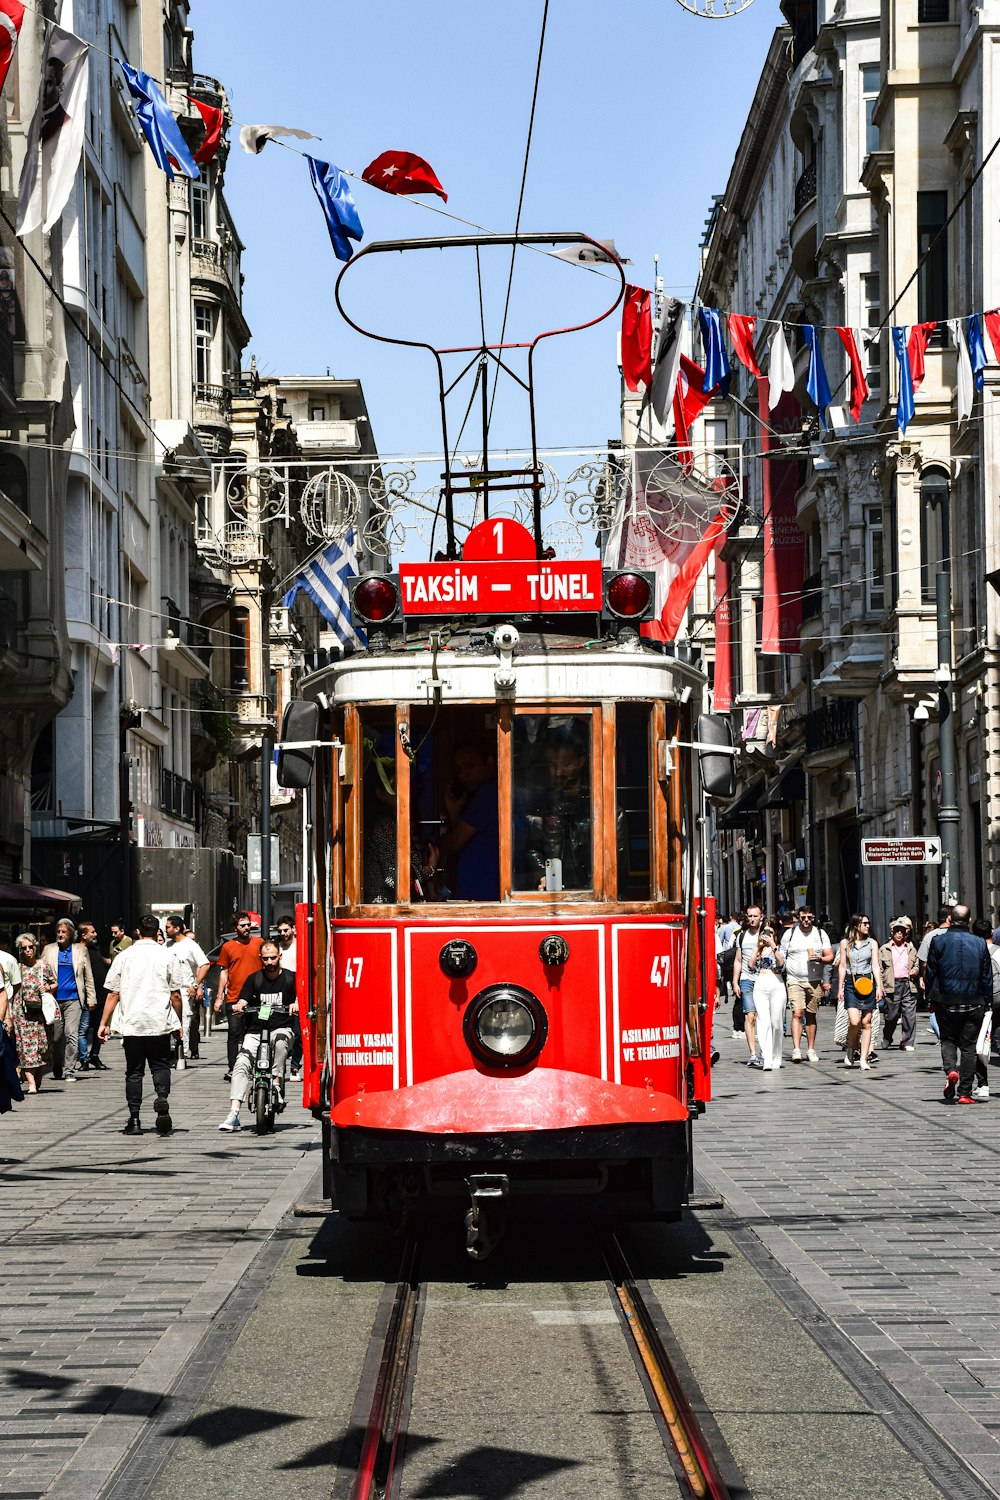 Un tramway rouge circulant dans une rue à côté de grands immeubles